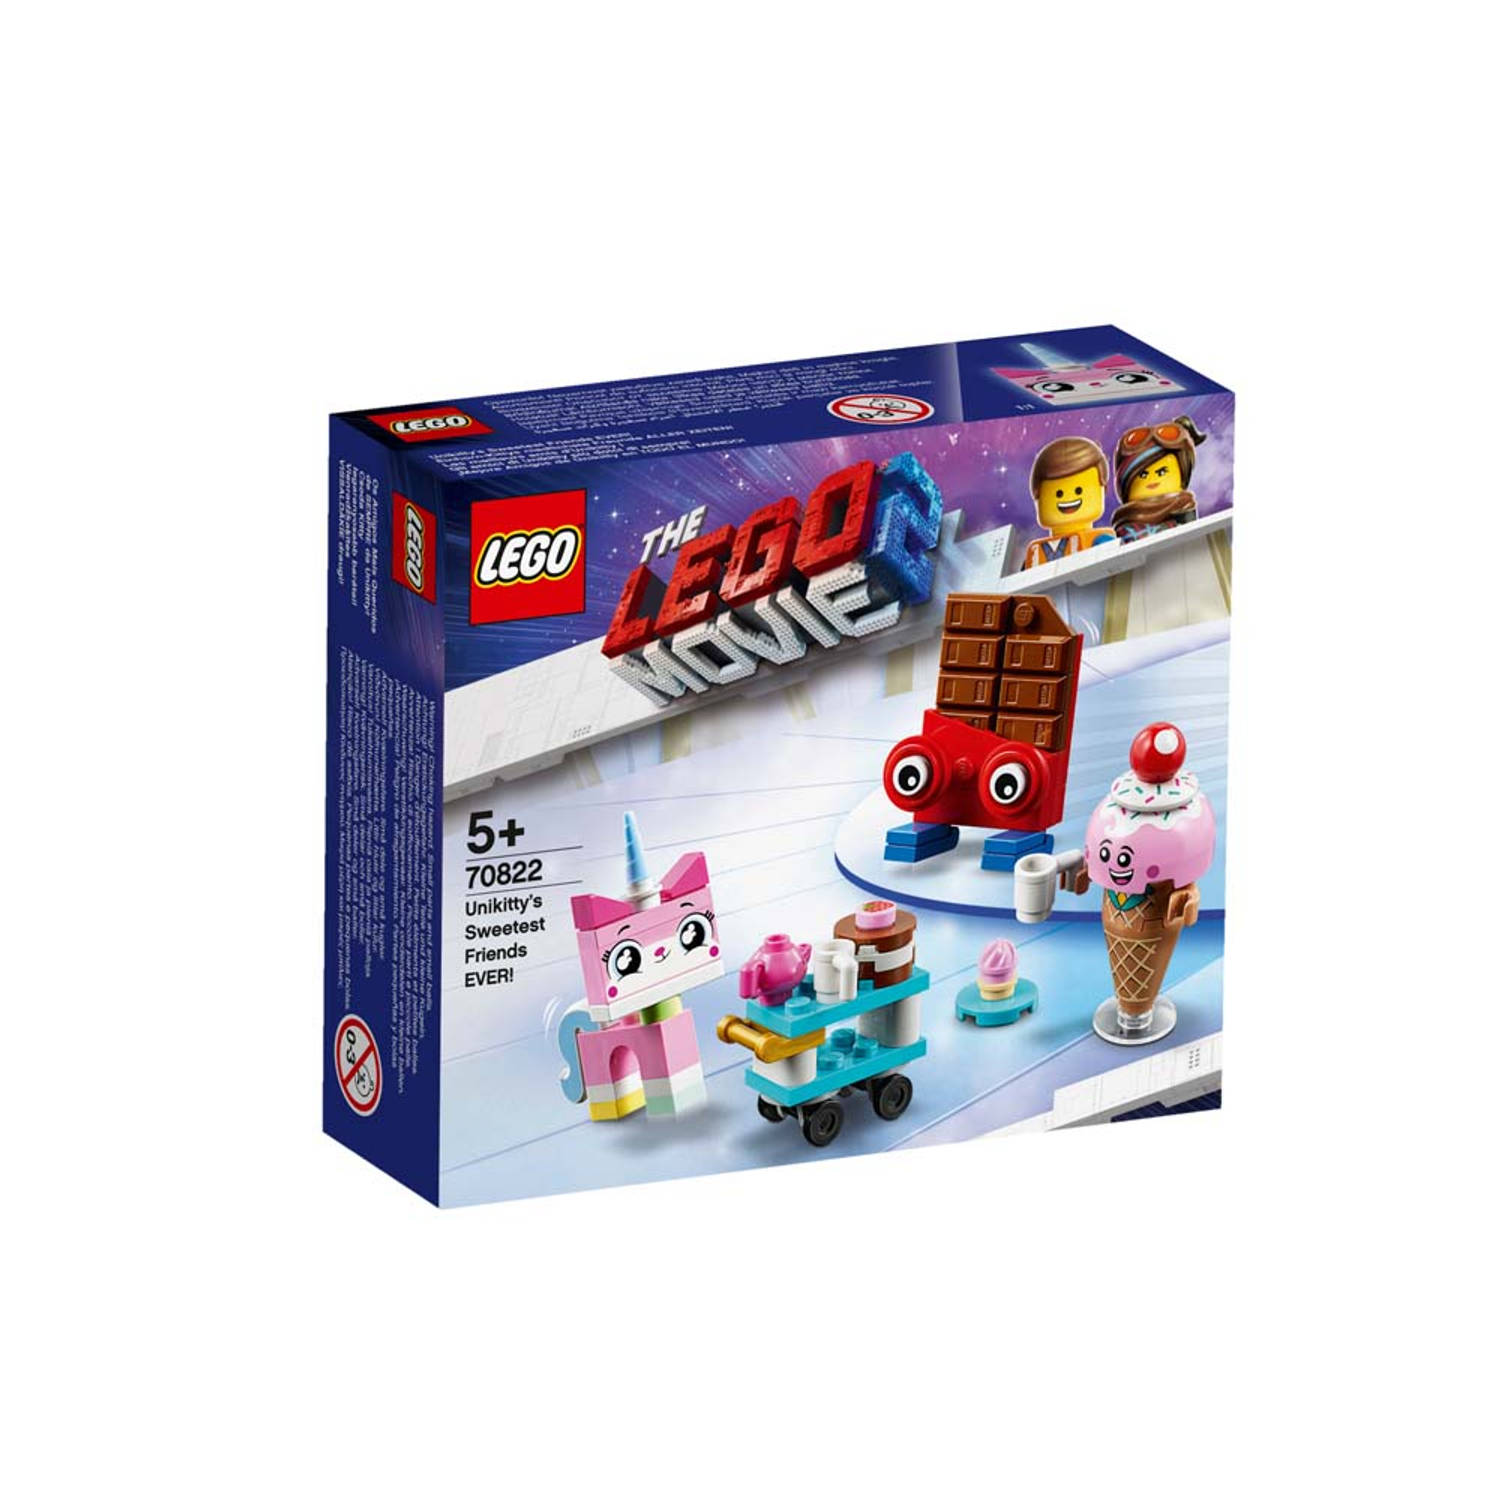 De Allerliefste Vrienden Van Unikitty Lego 70822